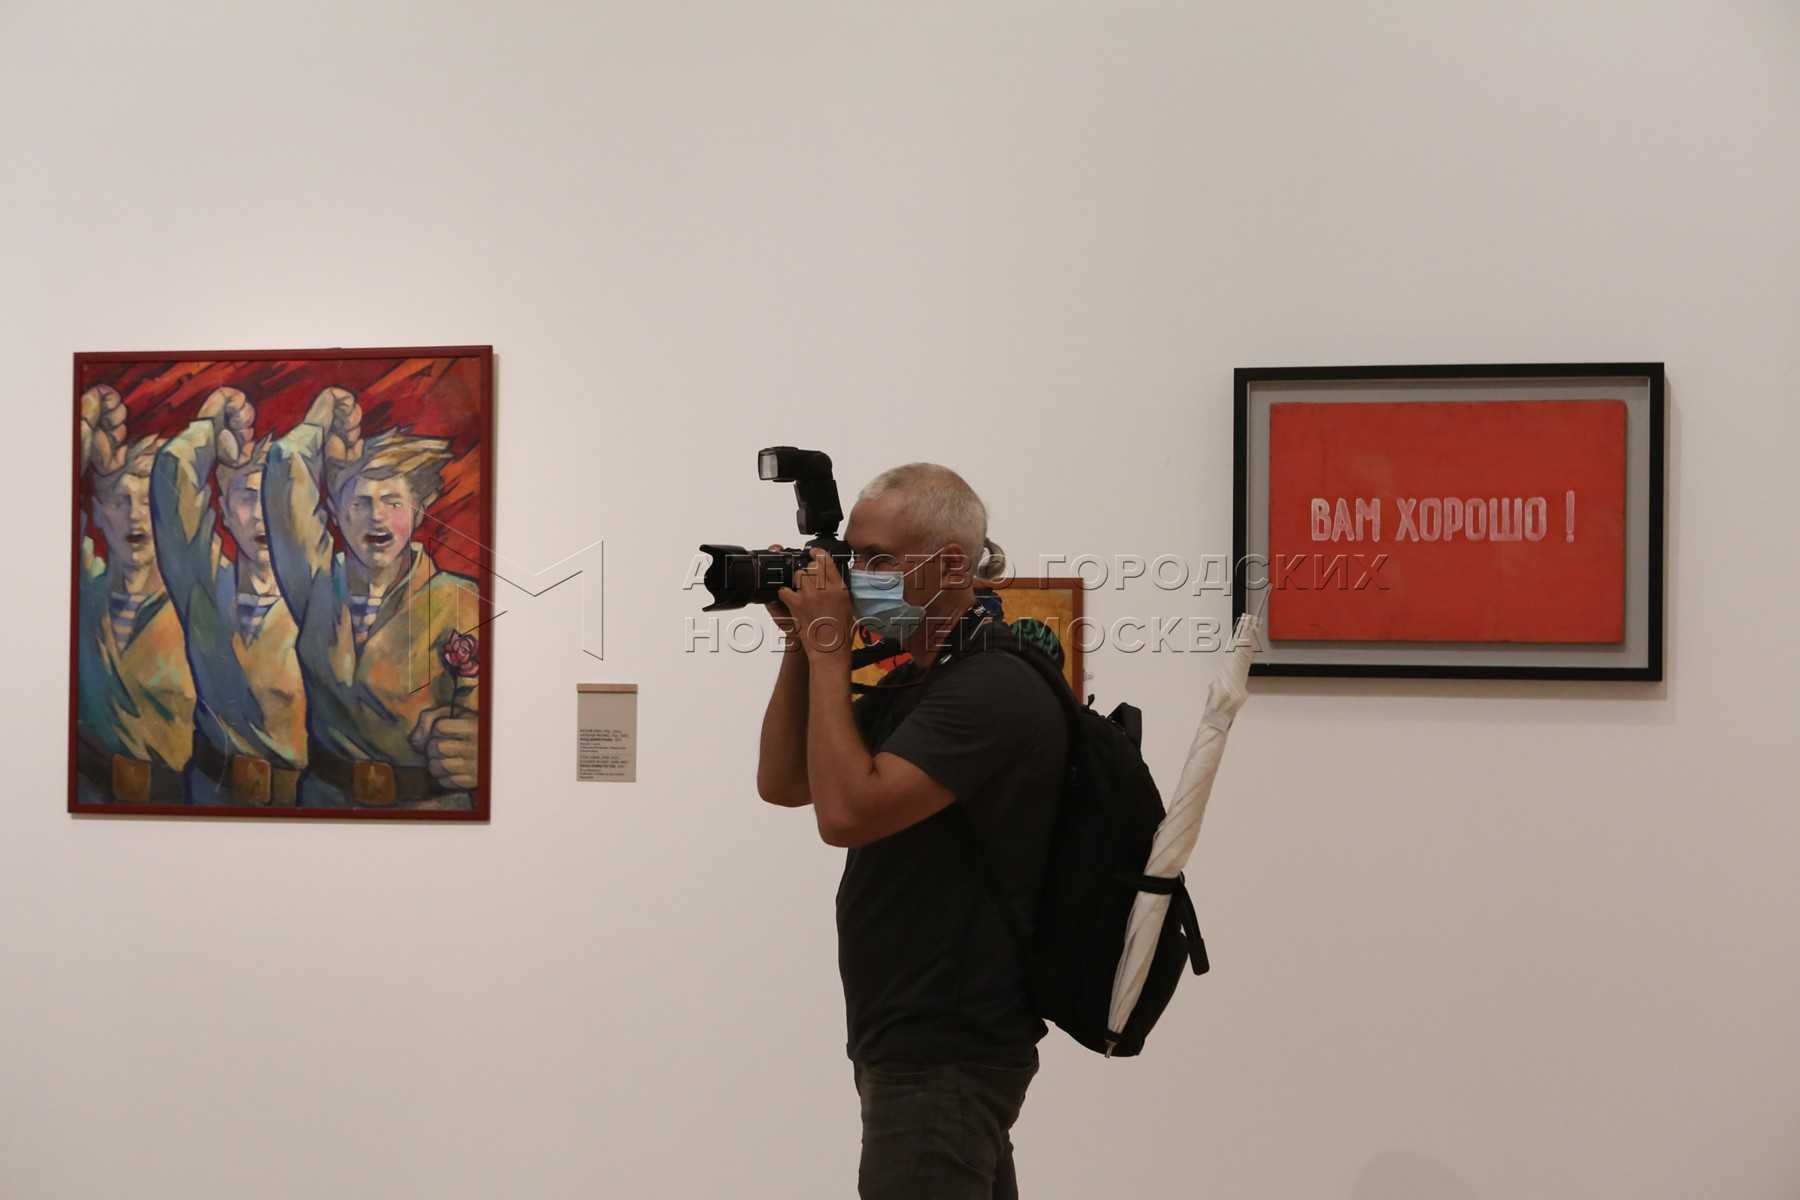 Выставка "оттепель" открылась в третьяковской галерее - культура, отдых, спорт  - новости - молнет.ru